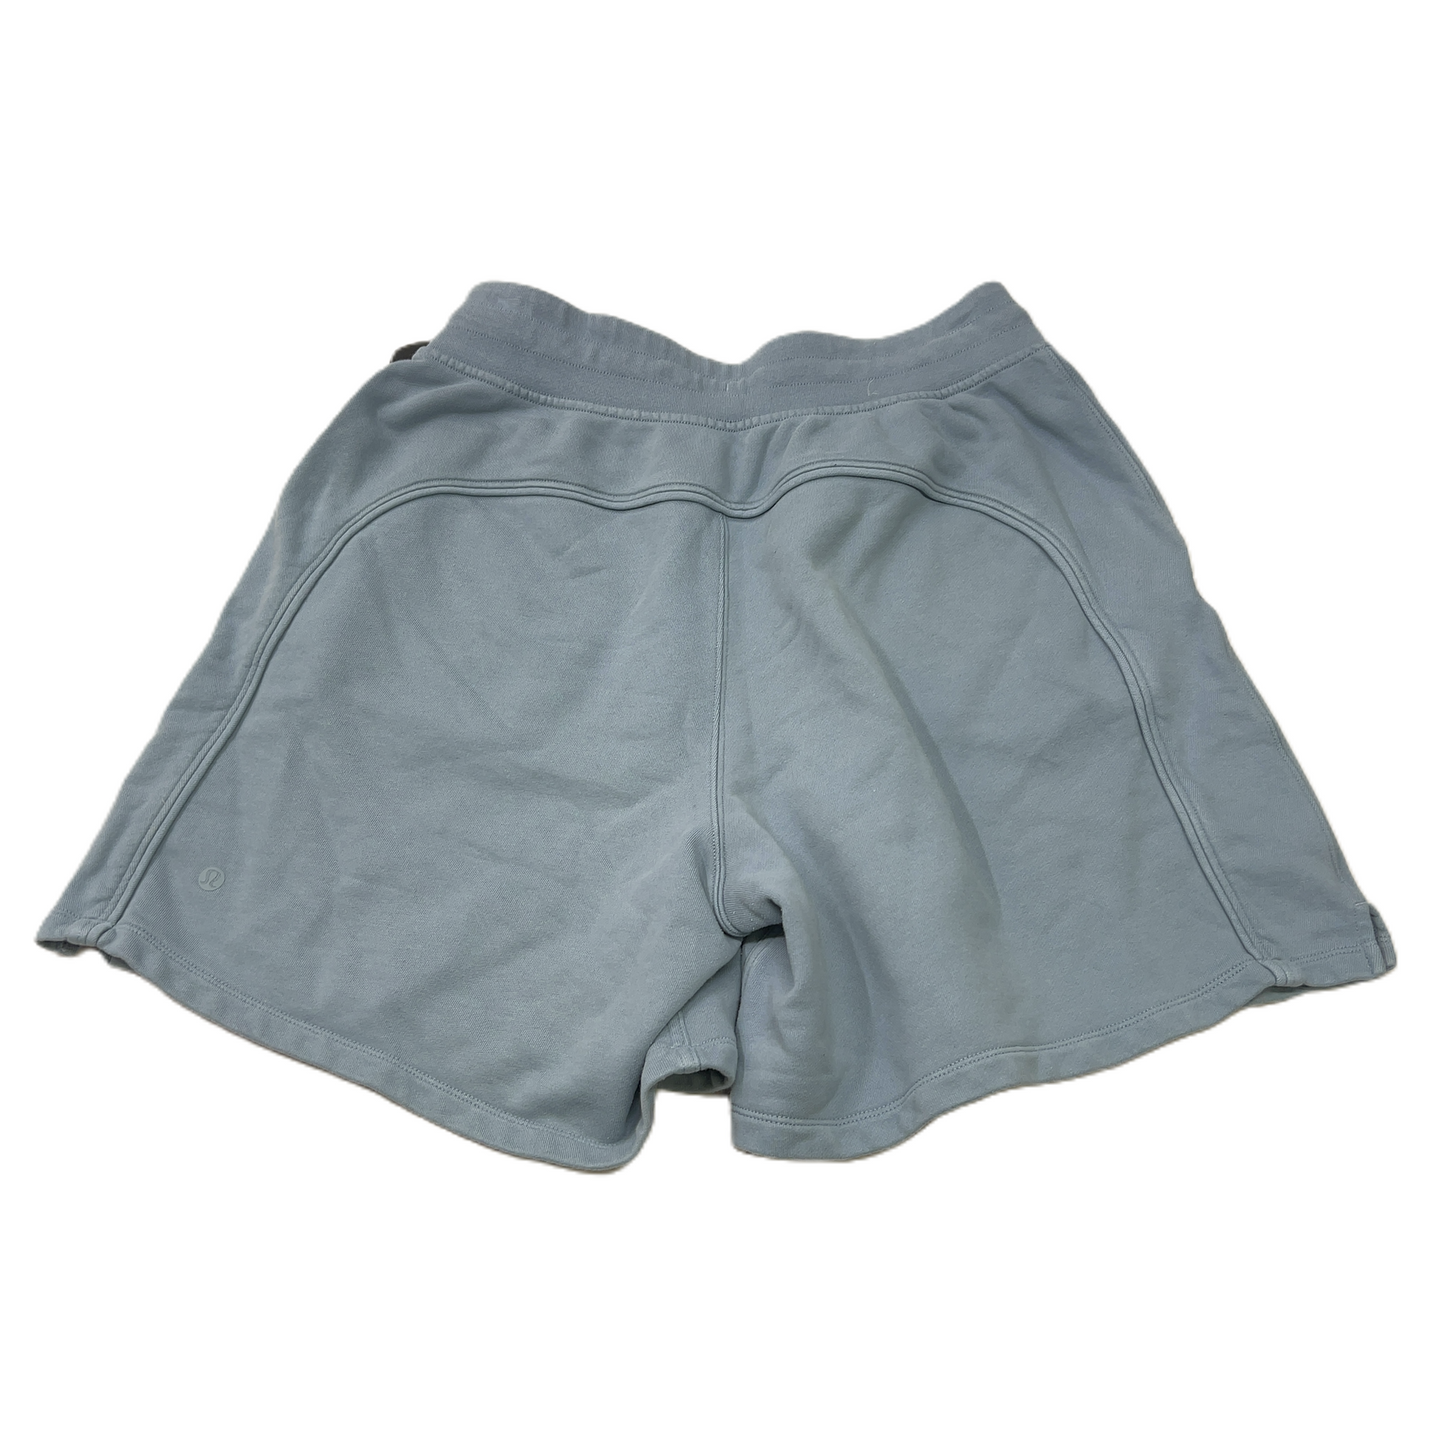 Blue  Athletic Shorts By Lululemon  Size: M